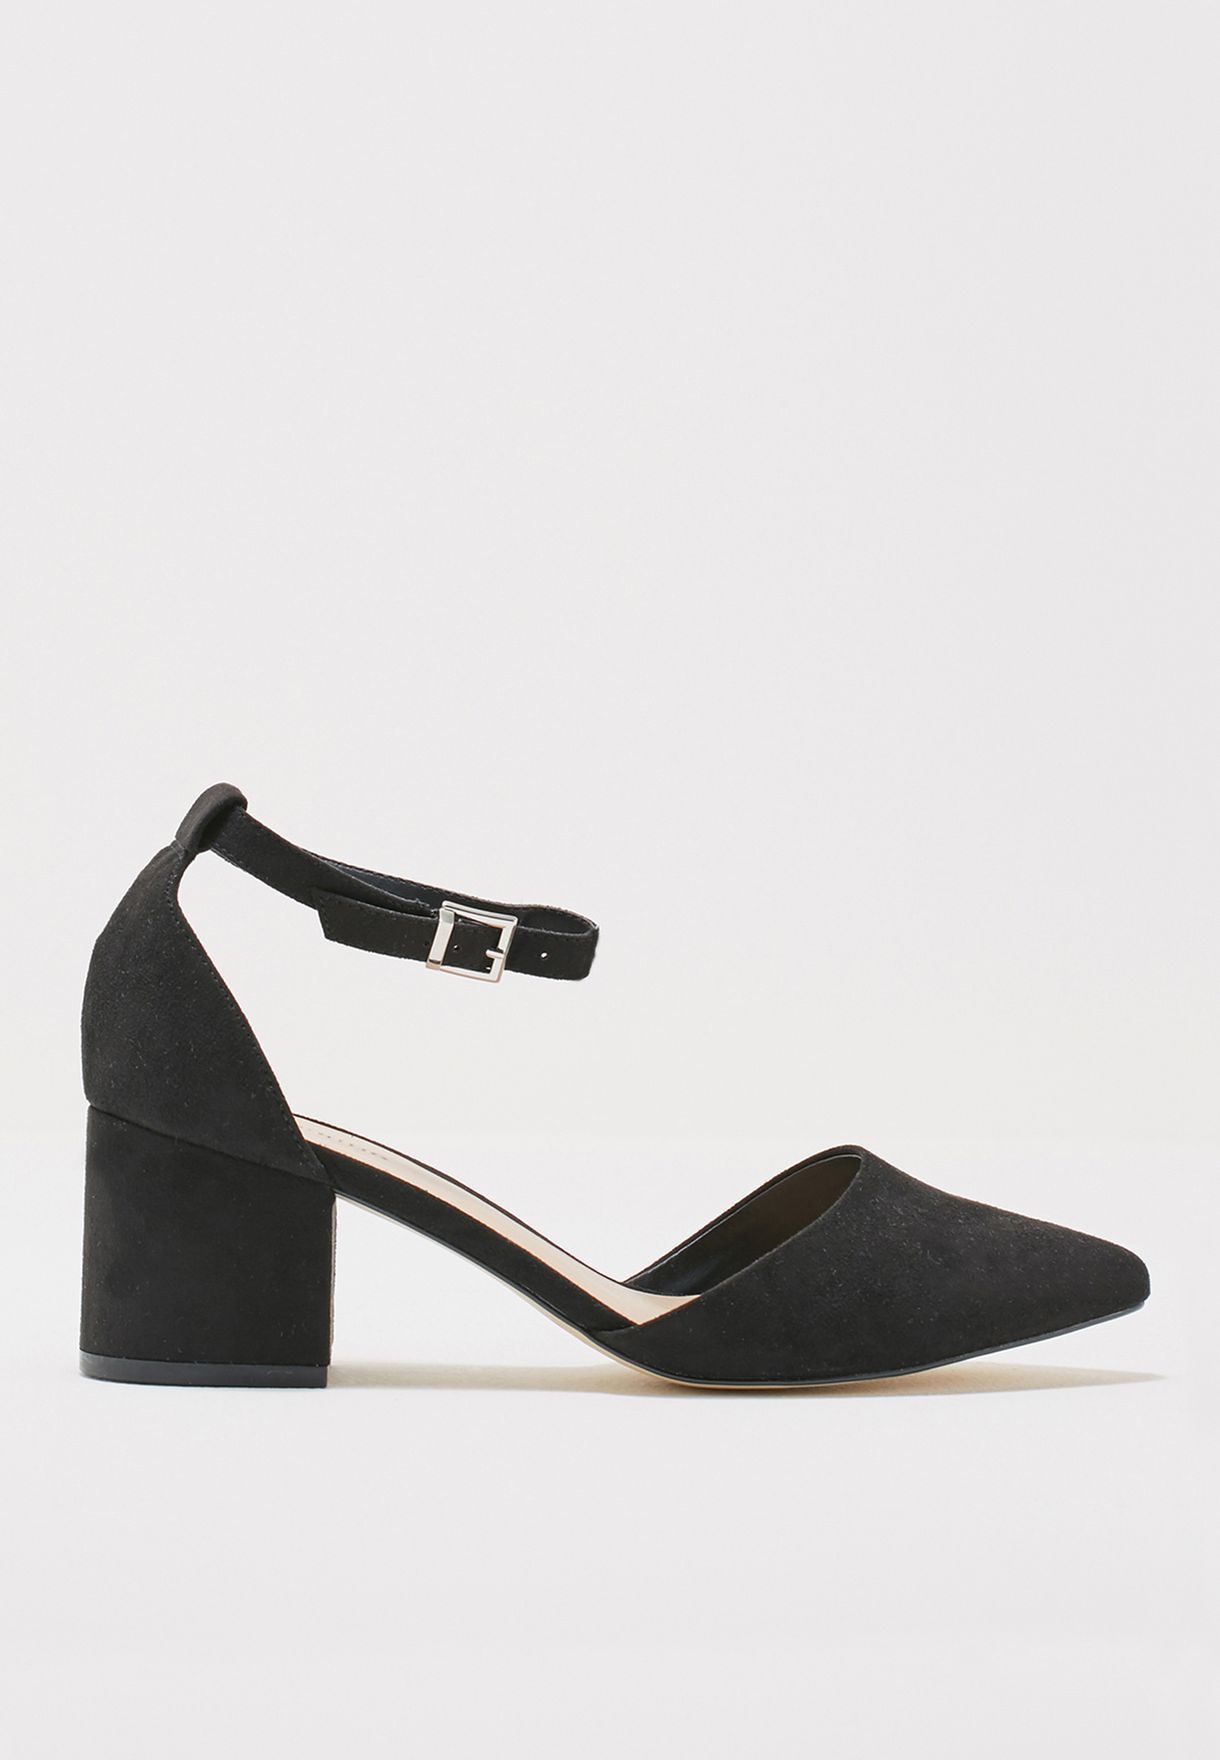 black mid block heel shoes